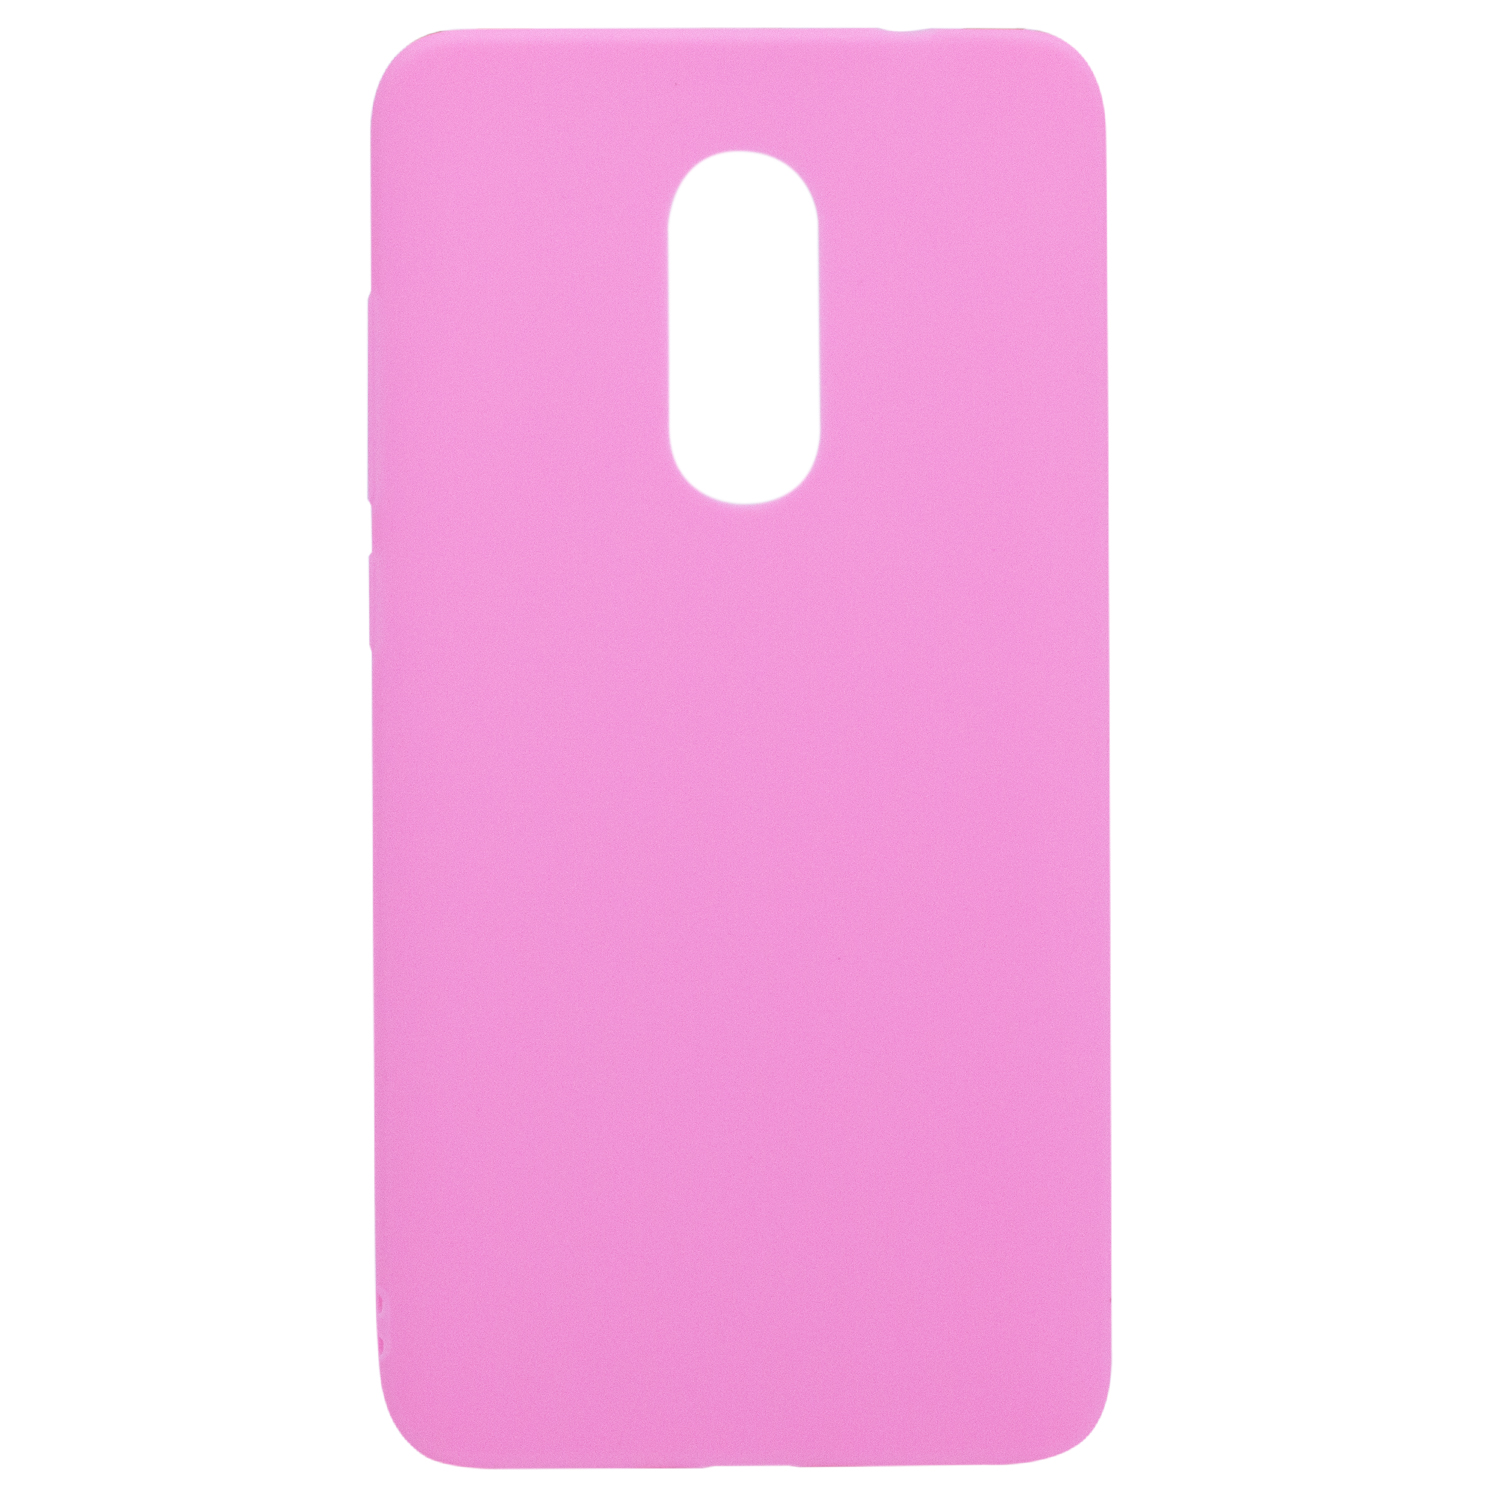 Силіконовий чохол Candy для Xiaomi Redmi Note 4X (Snapdragon) (Рожевий)